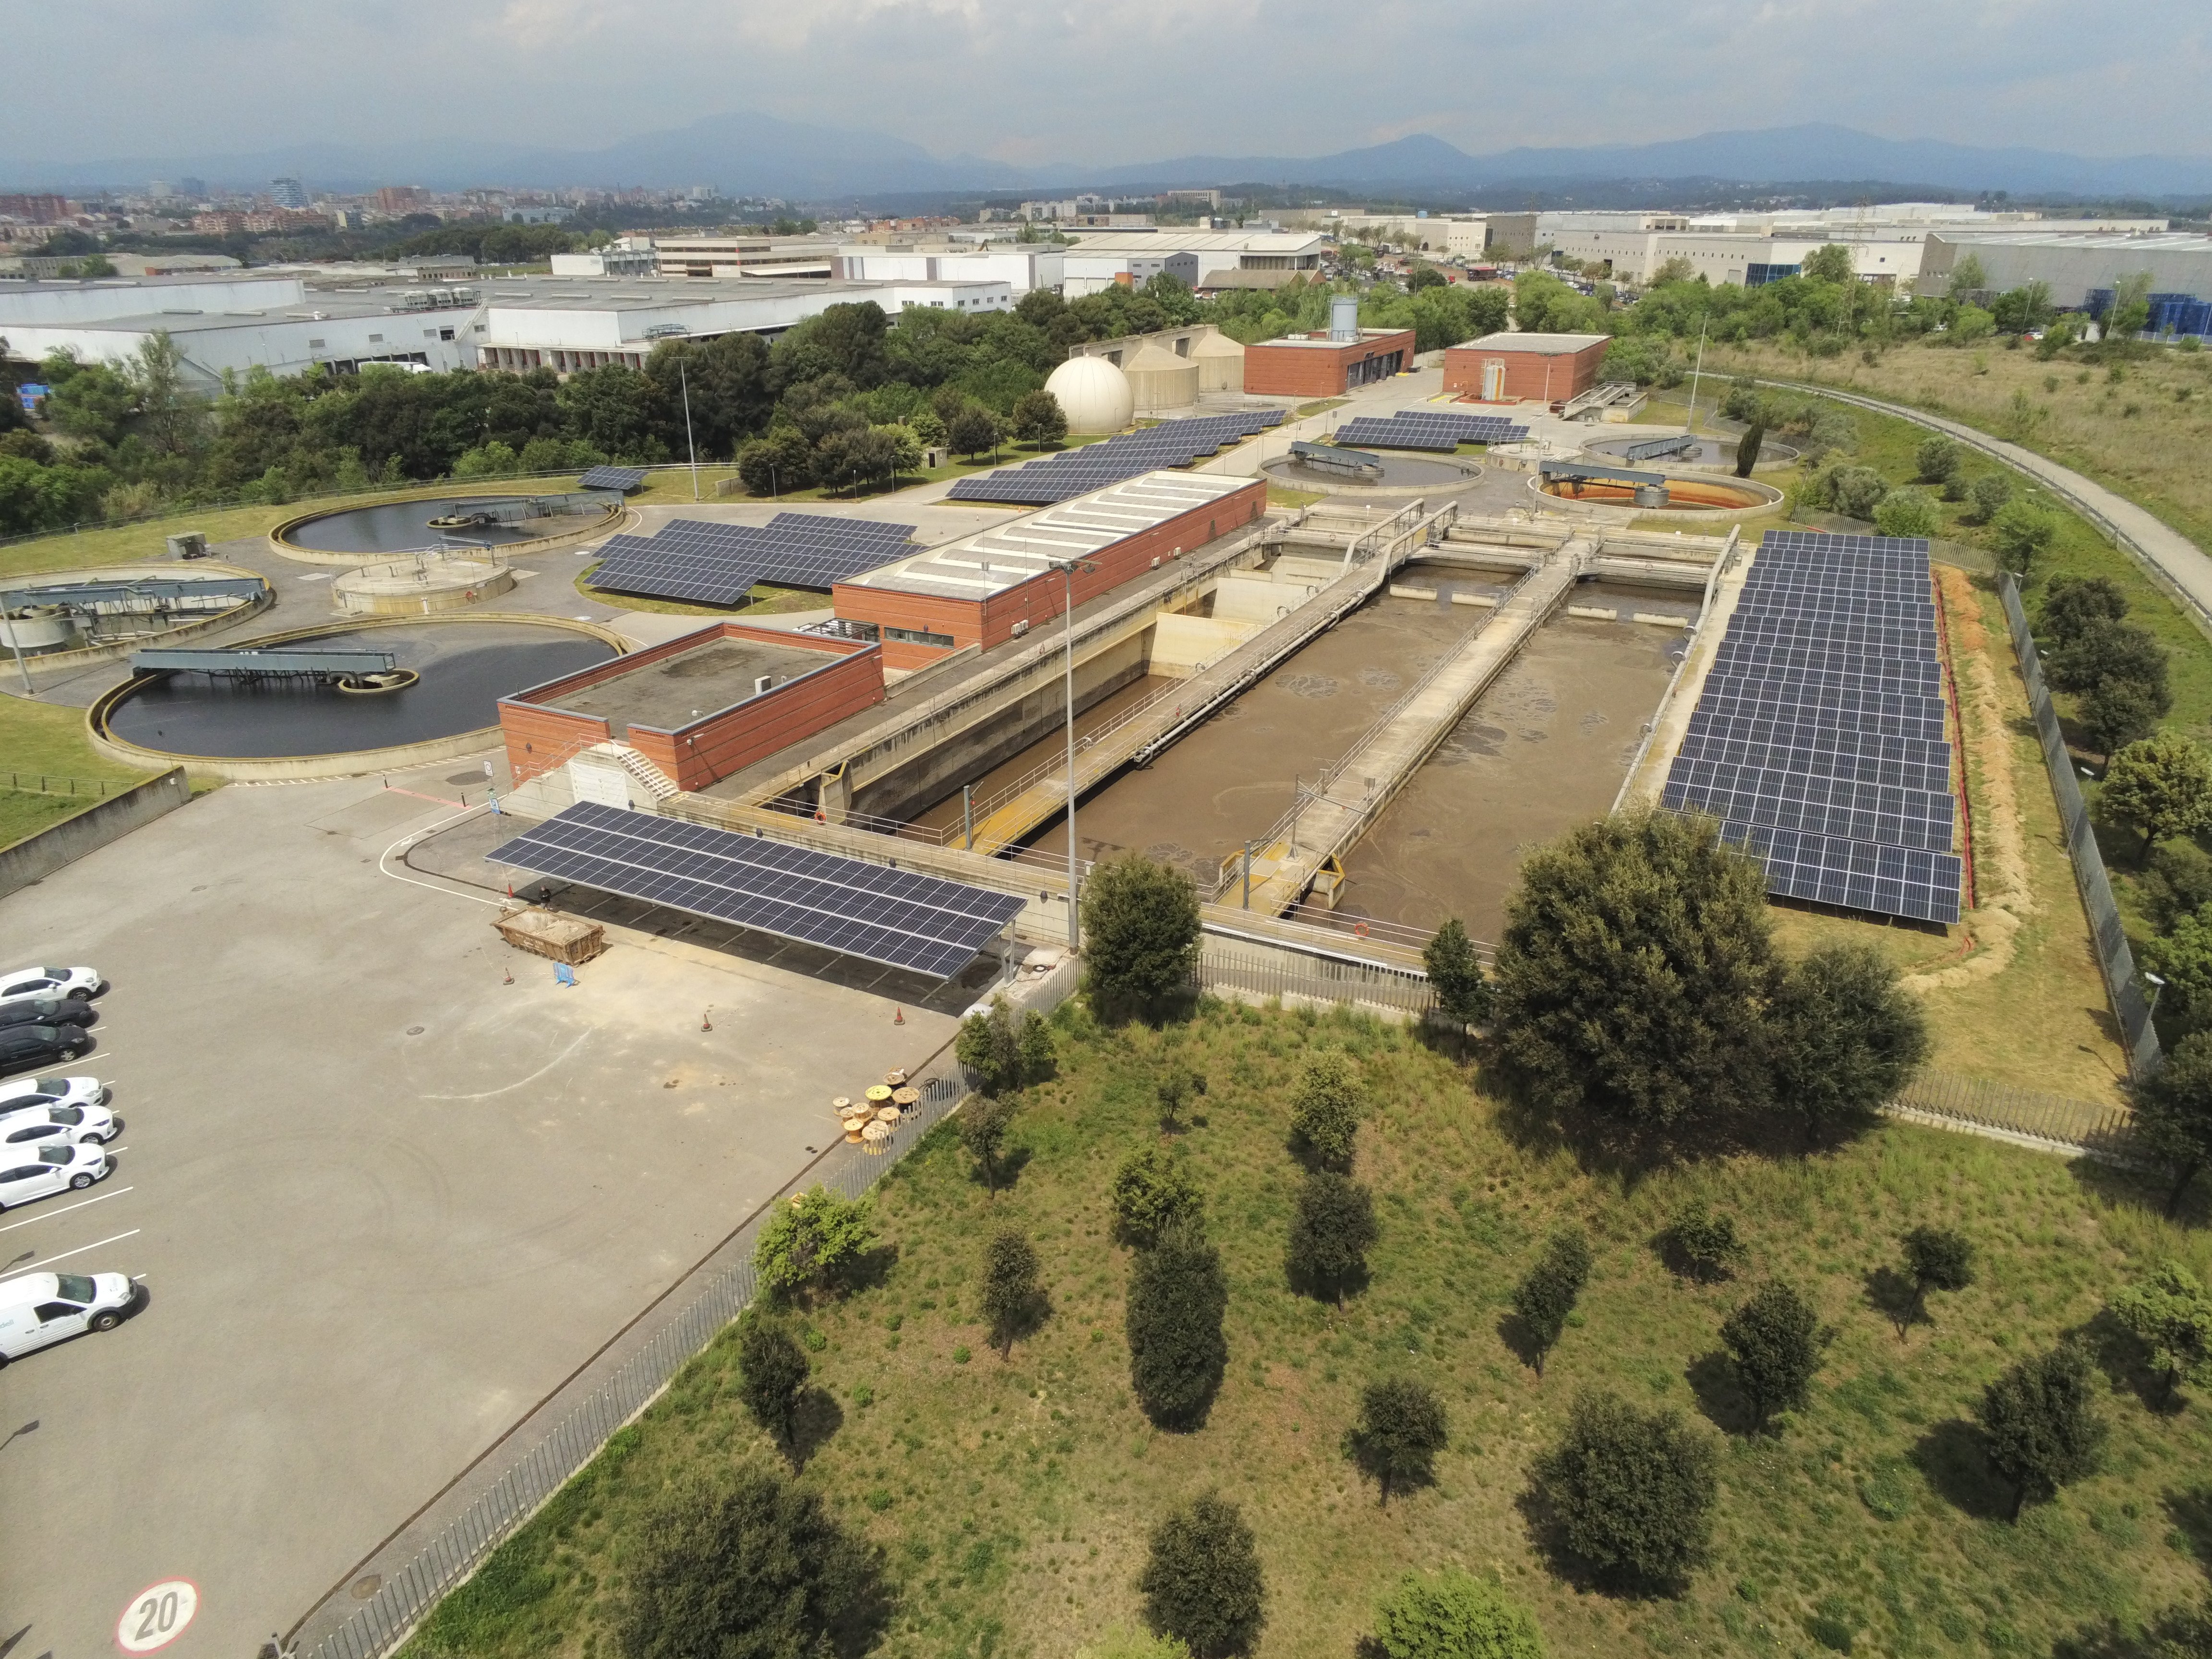 L’Ajuntament i Aigües Sabadell aproven el Biotop per transformar la ciutat